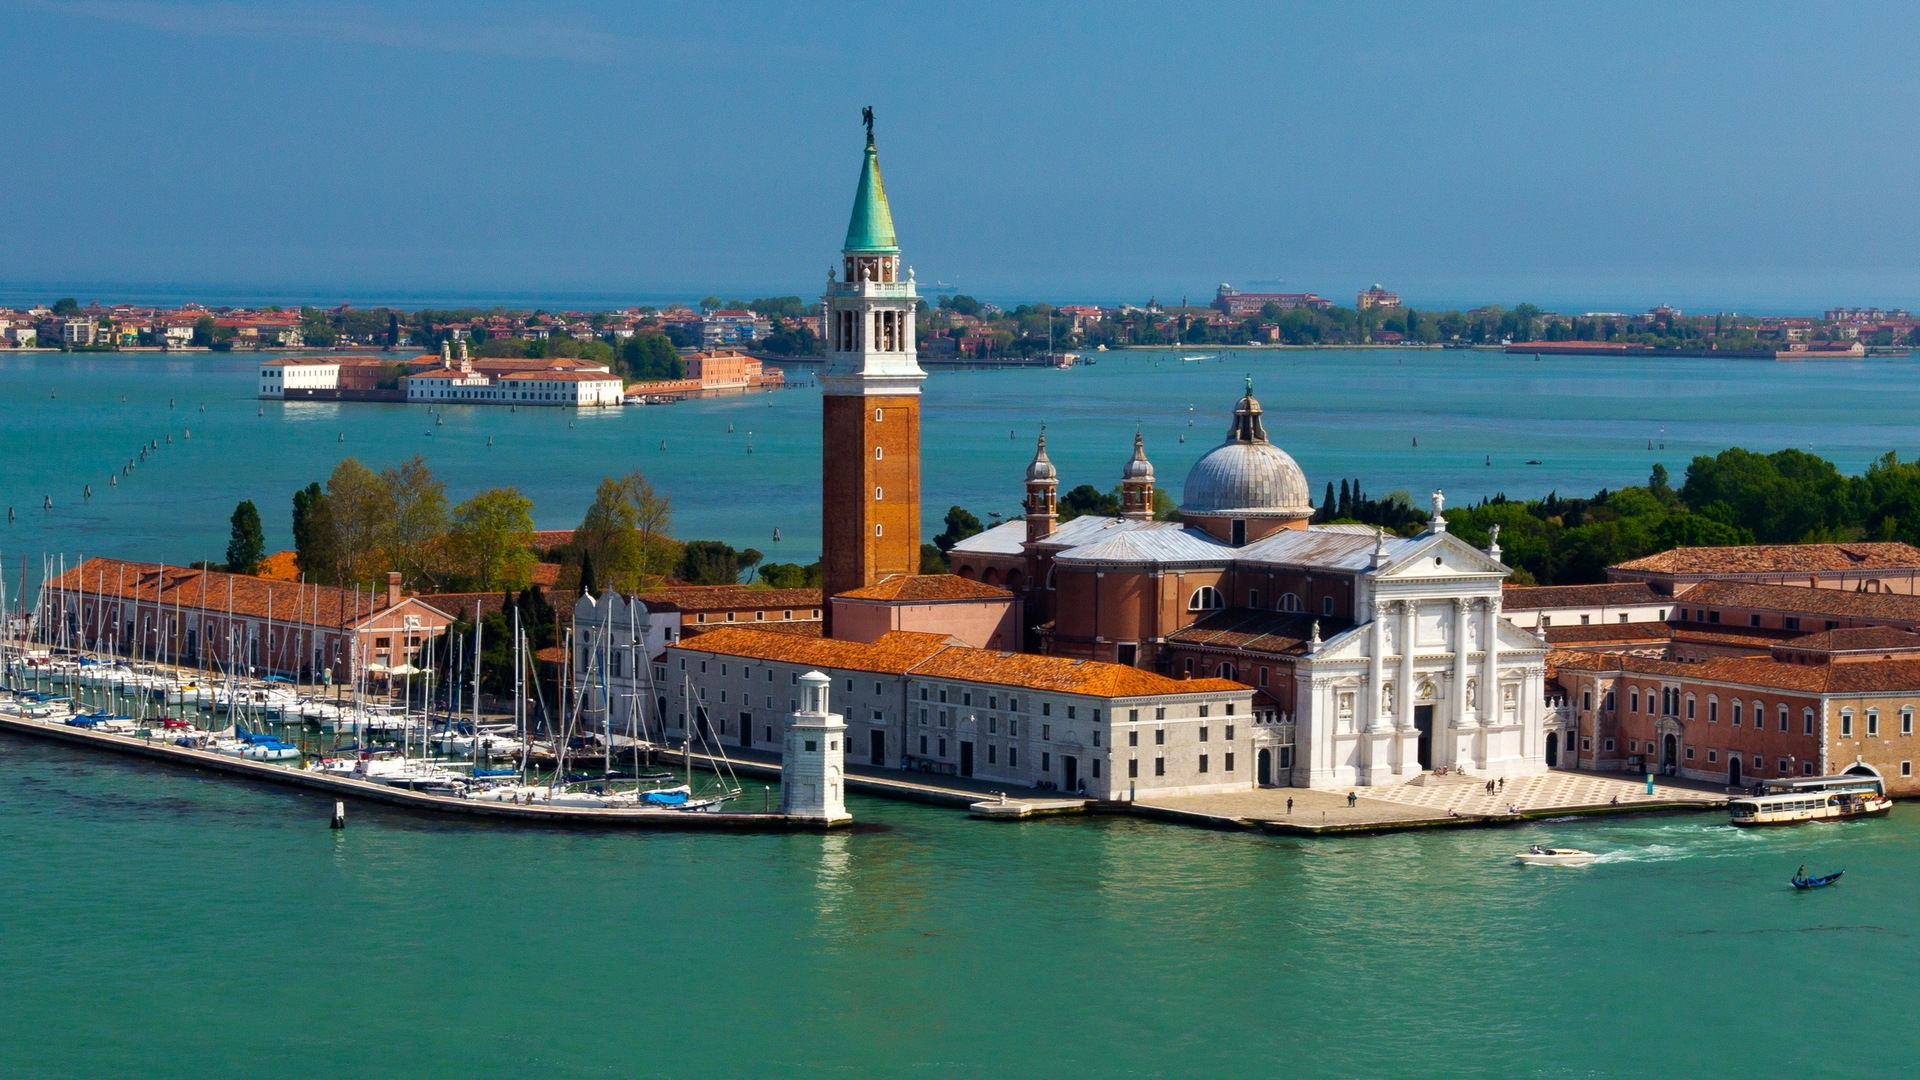 Island San Giorgio Maggiore Venice for 1920 x 1080 HDTV 1080p resolution